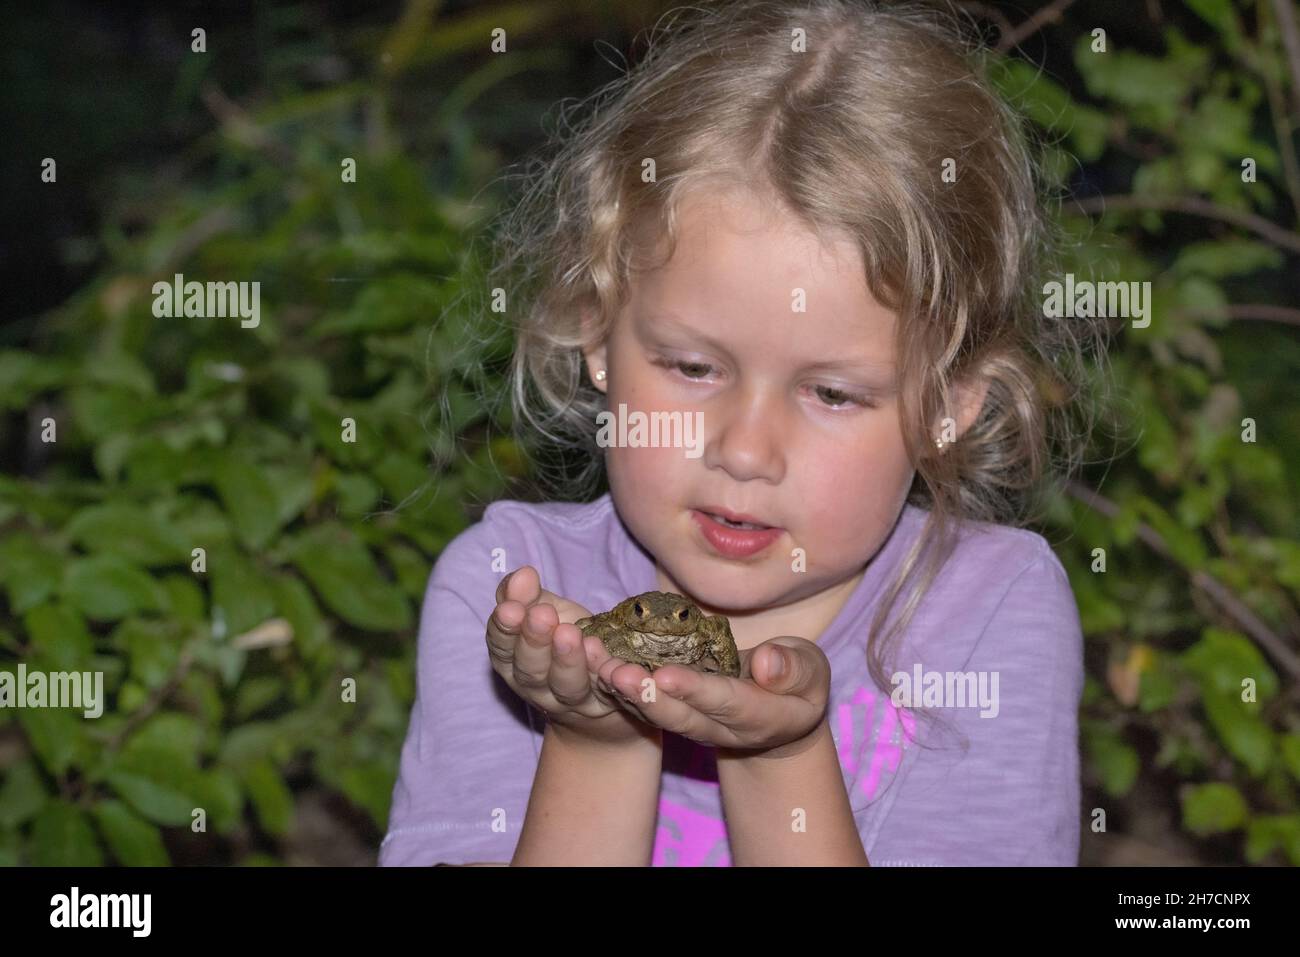 Crapaud européenne (Bufo bufo), petite fille avec un écart de dent tenant soigneusement un crapaud commun dans ses mains , Allemagne Banque D'Images